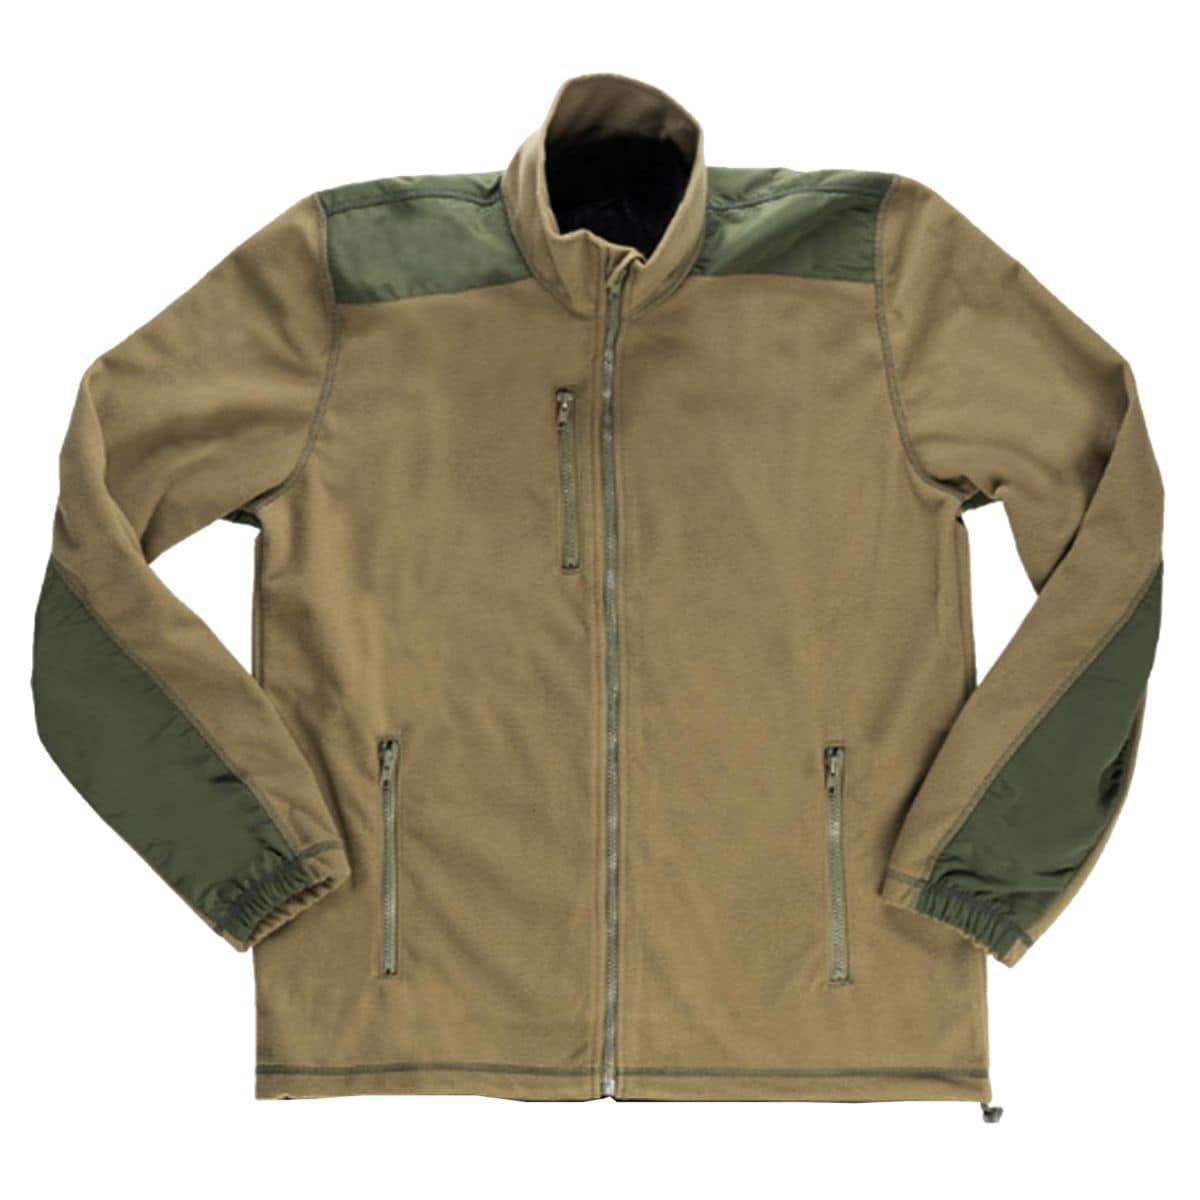 Purchase the Belgian Fleece Jacket Windstopper Like New olive by